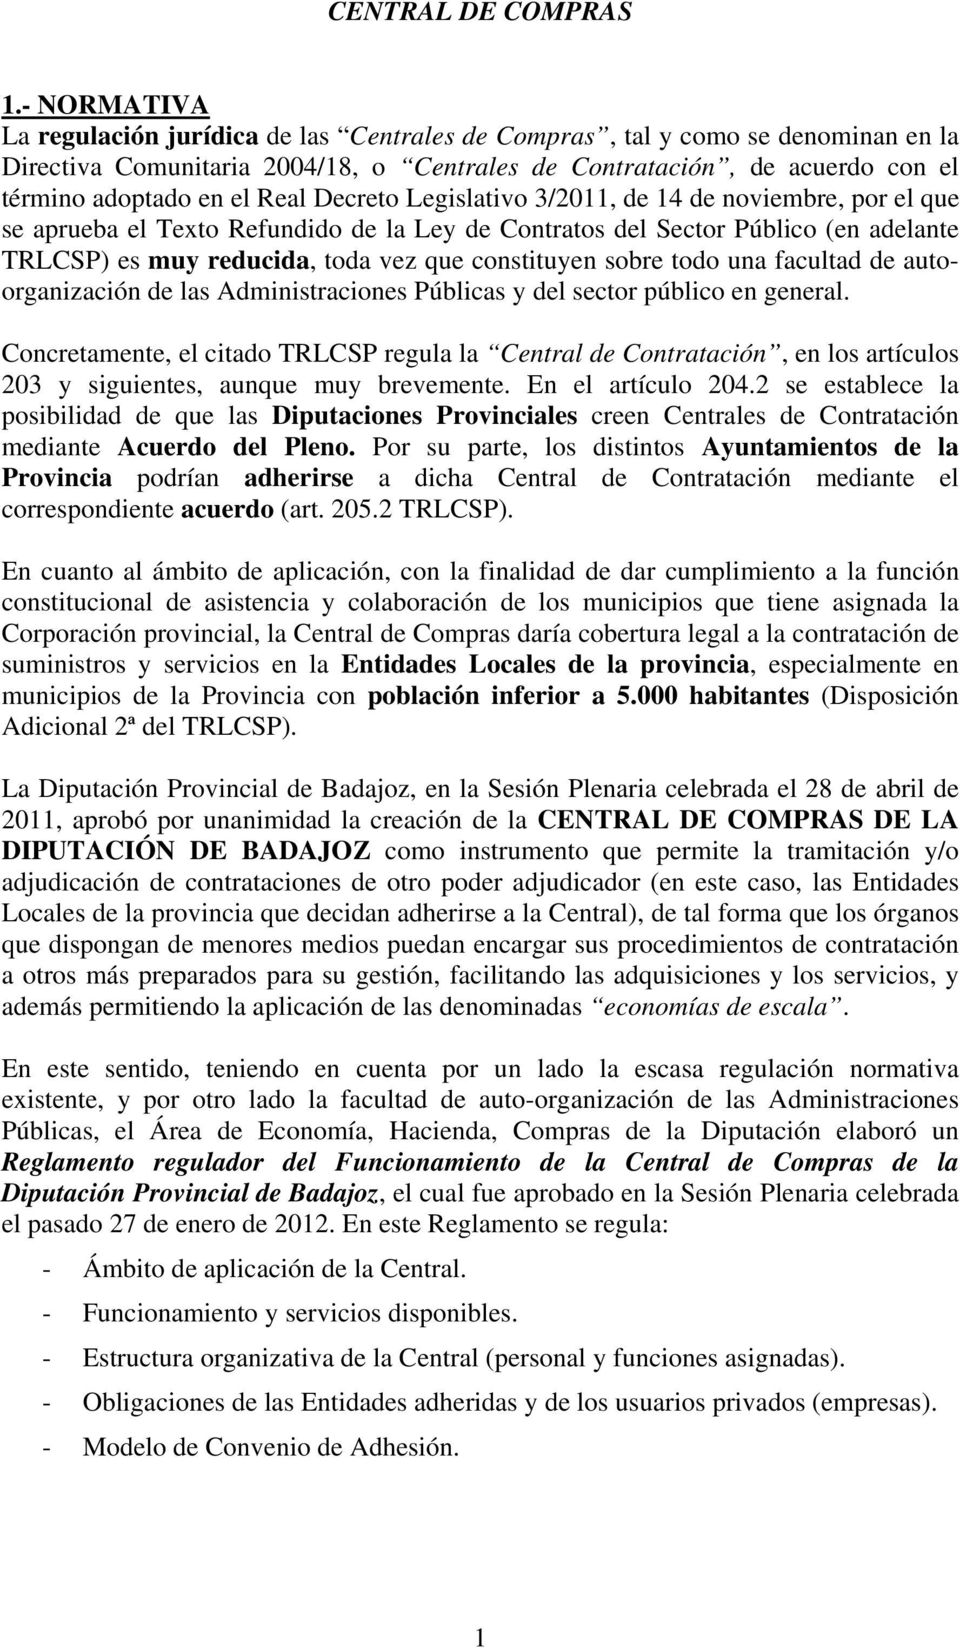 Decreto Legislativo 3/2011, de 14 de noviembre, por el que se aprueba el Texto Refundido de la Ley de Contratos del Sector Público (en adelante TRLCSP) es muy reducida, toda vez que constituyen sobre